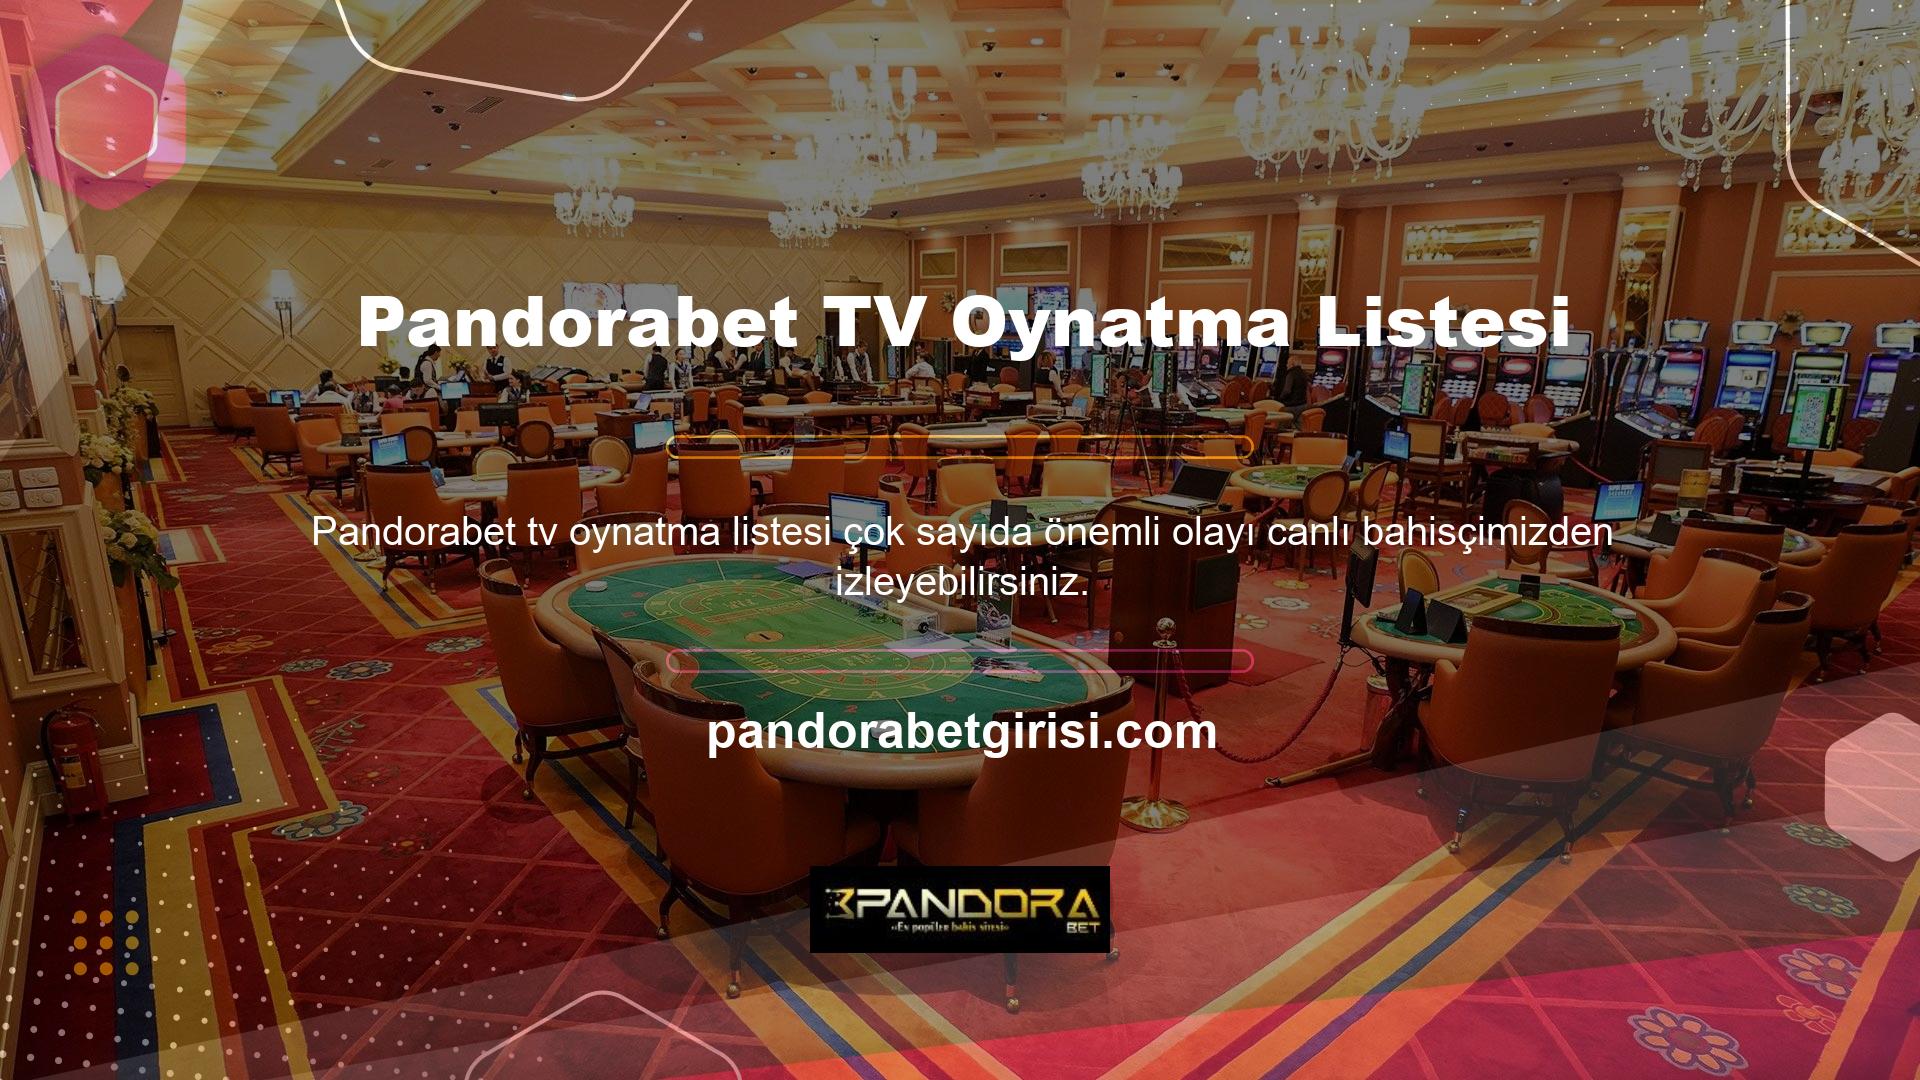 Pandorabet TV'de şu anda hangi sporlar yayınlanıyor? Bu, TV sayfasına erişilerek elde edilir